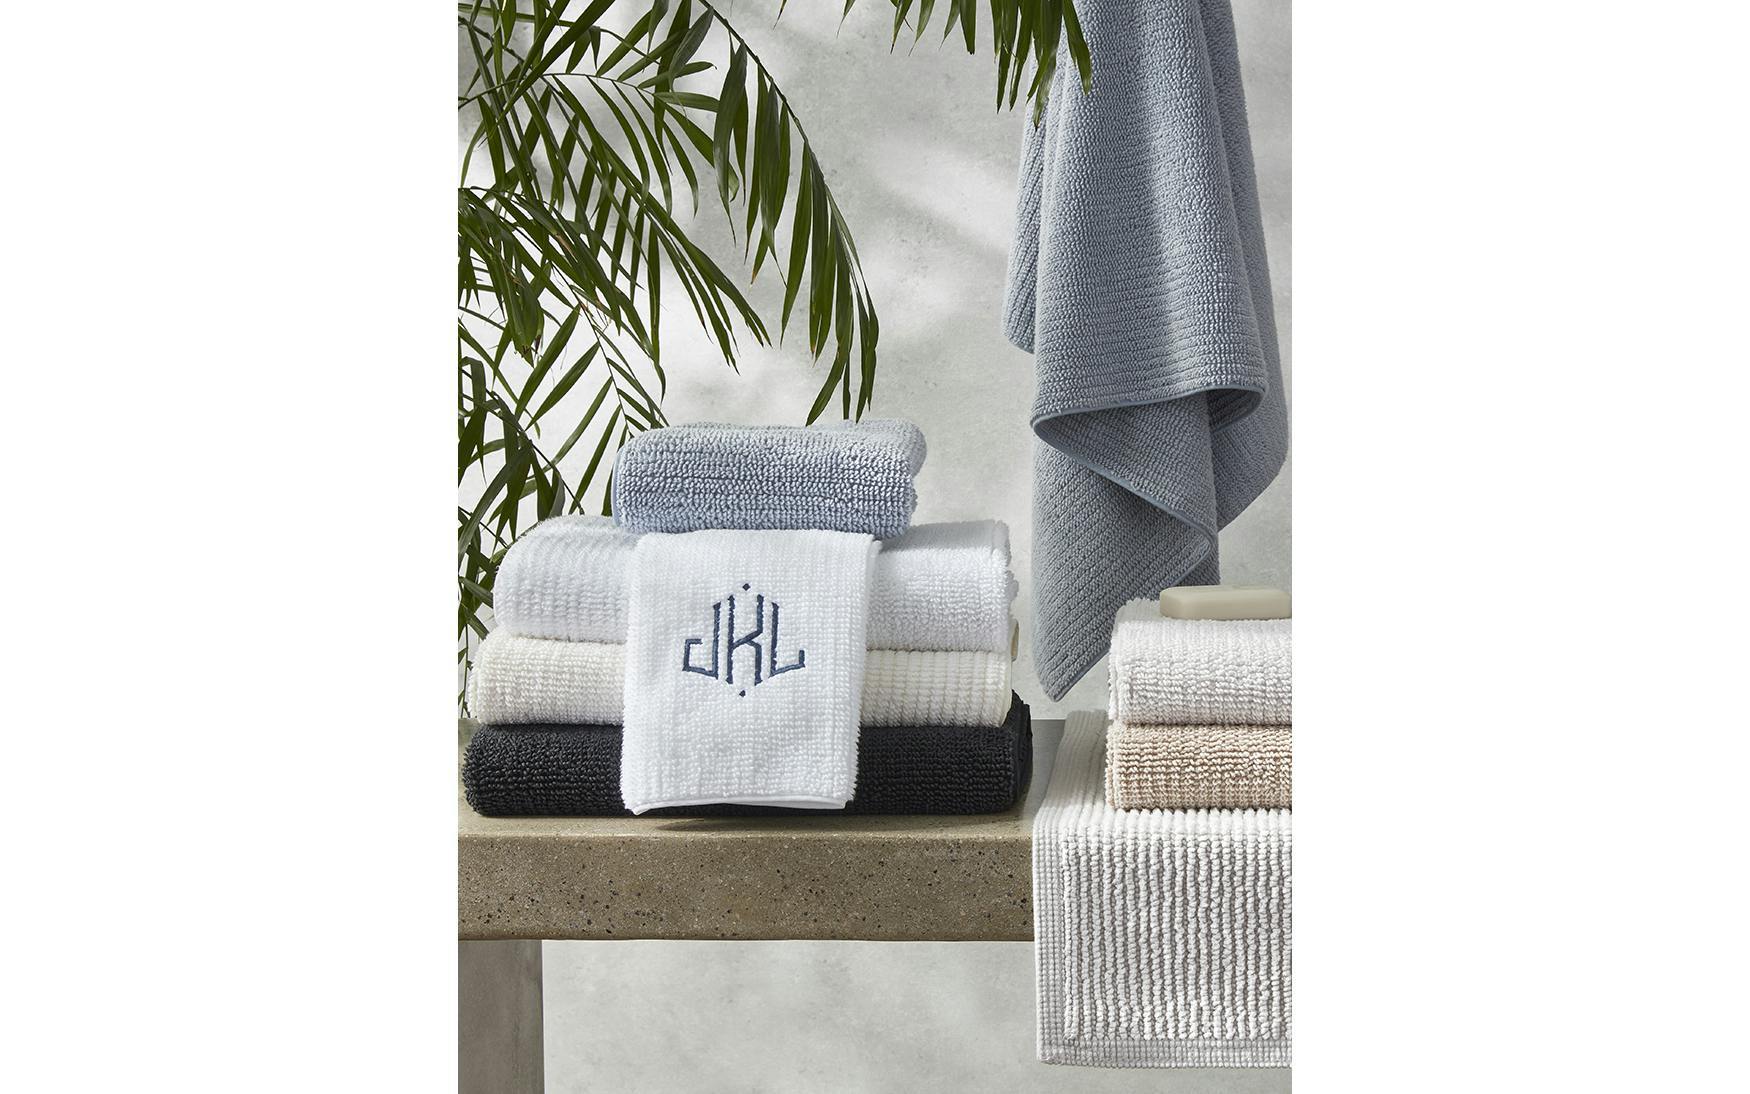 Matouk Towel Collection Daphne Palm